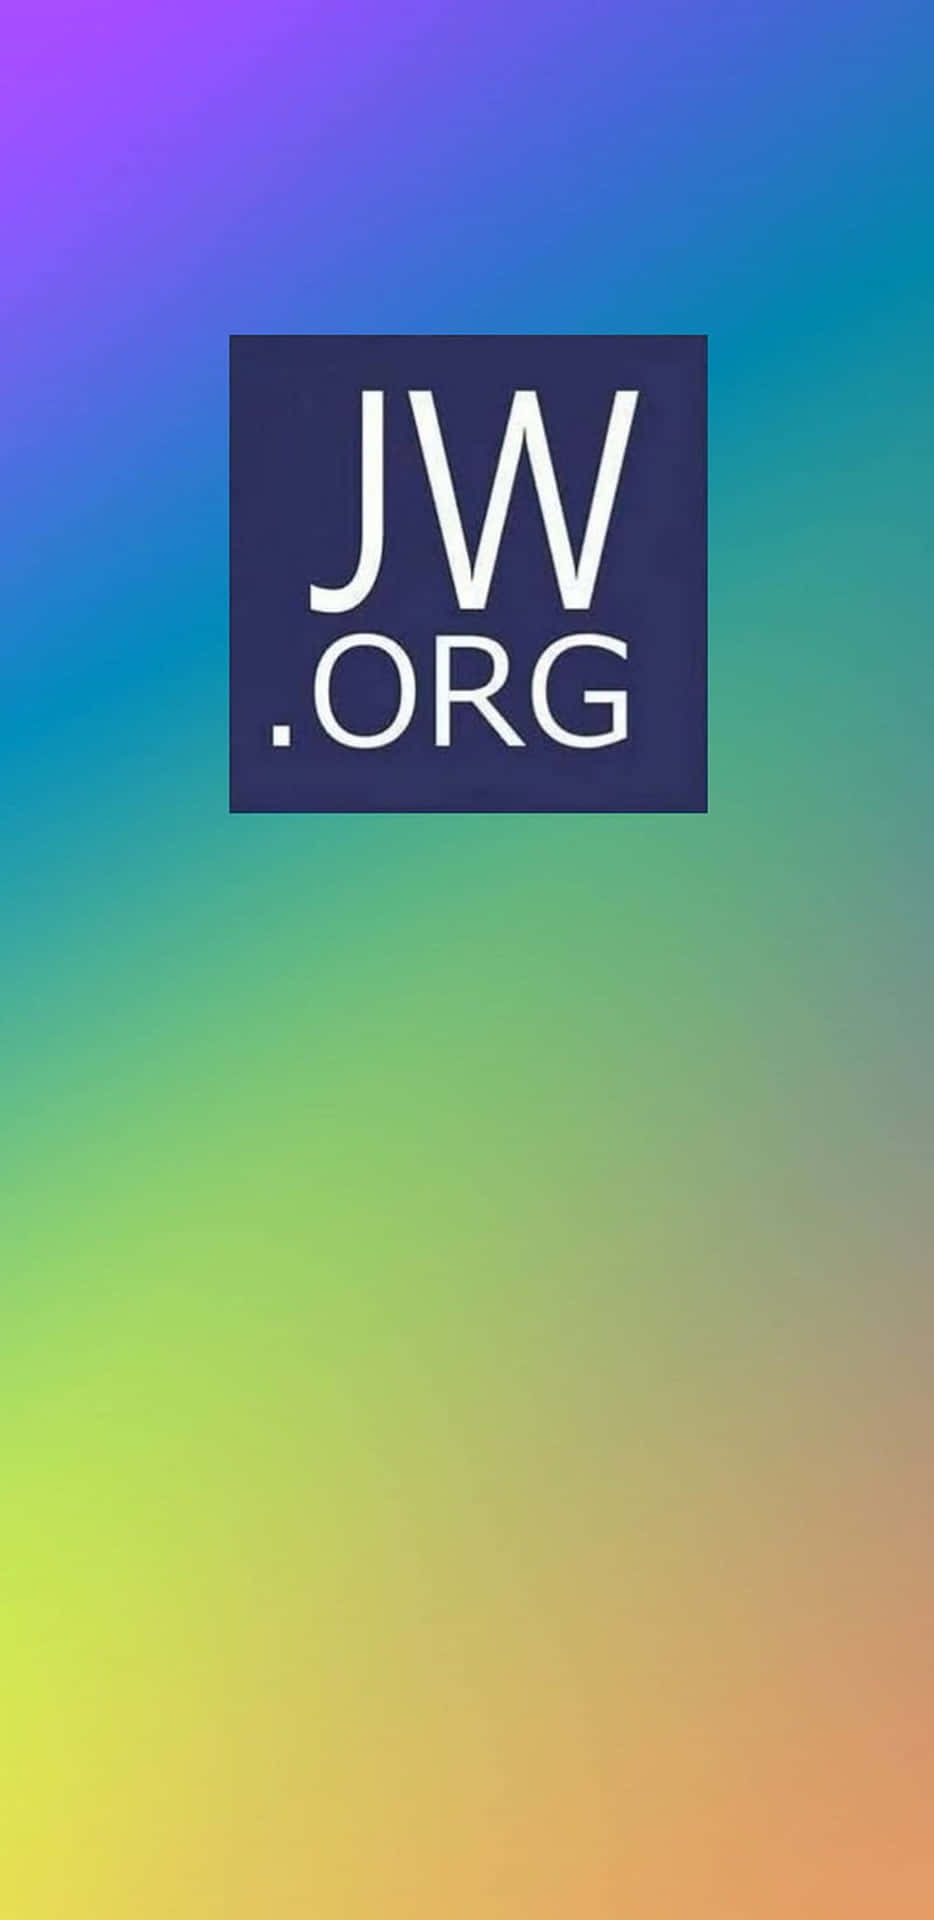 Logode Jw.org Con Degradado De Arcoíris. Fondo de pantalla